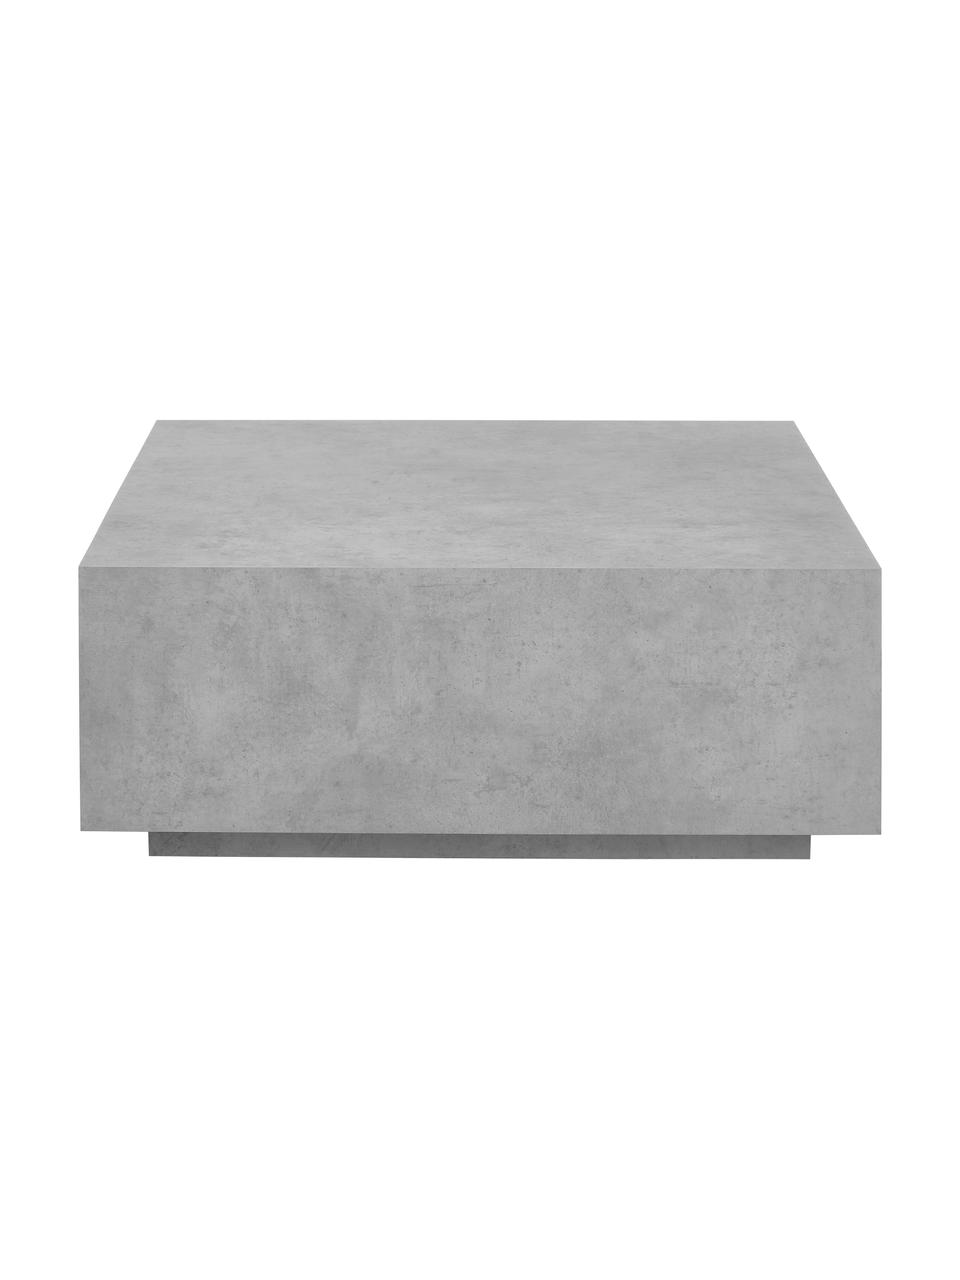 Konferenční stolek v betonovém vzhledu Lesley, MDF deska (dřevovláknitá deska střední hustoty) pokrytá melaminovou fólií, mangové dřevo, Šedá, vzhled betonu, matná, Š 90 cm, H 90 cm